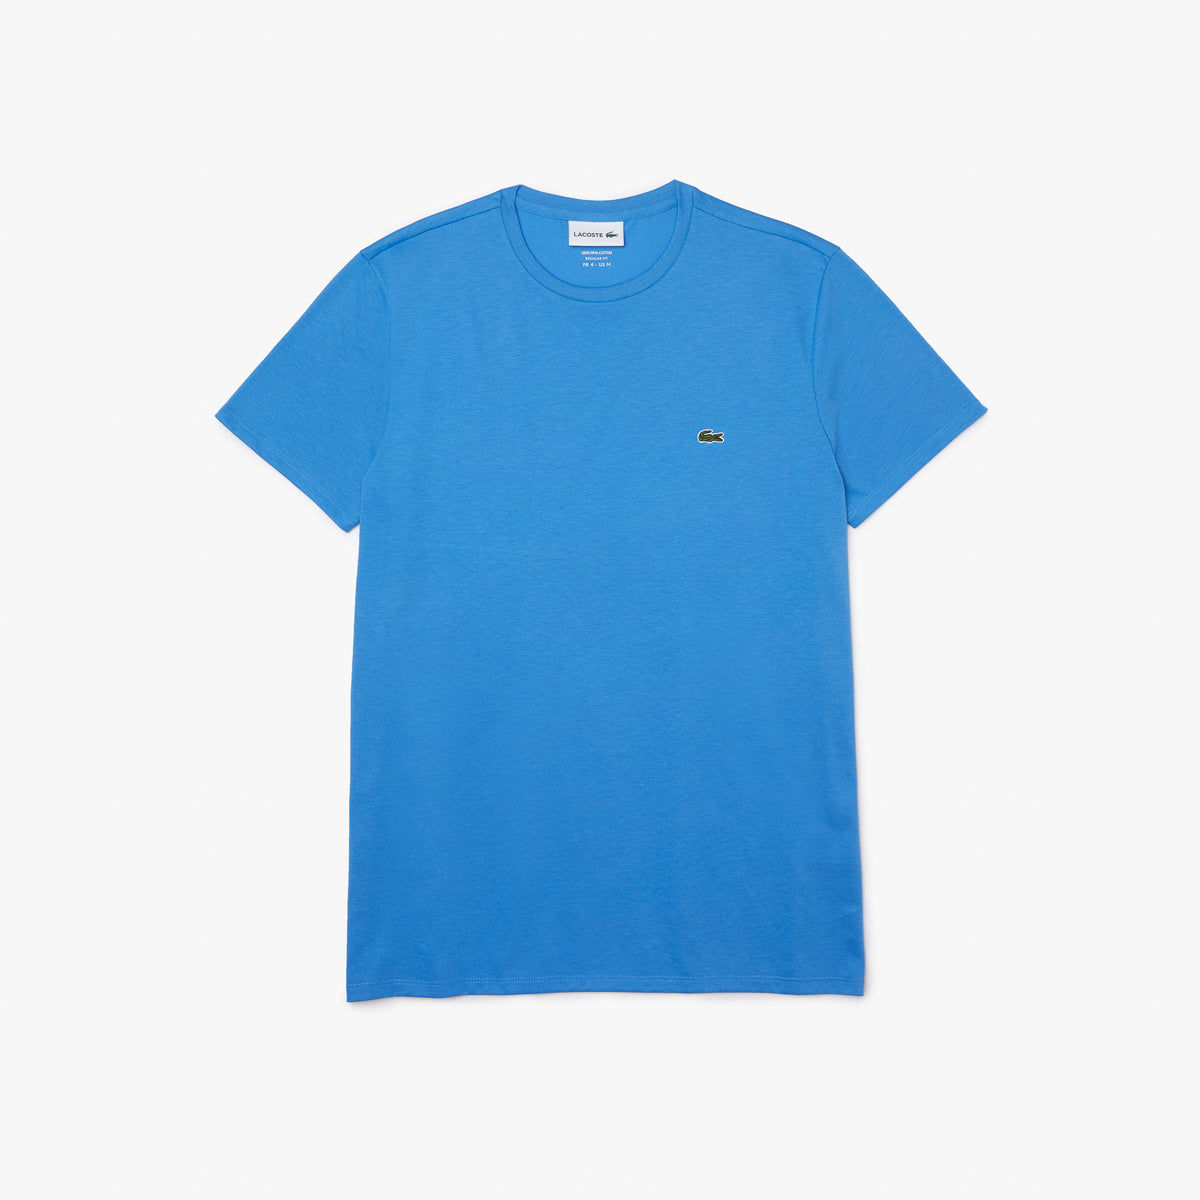 Men's Crew Neck Pima Cotton Jersey T-shirt - Blue L99  ( TH6709 )